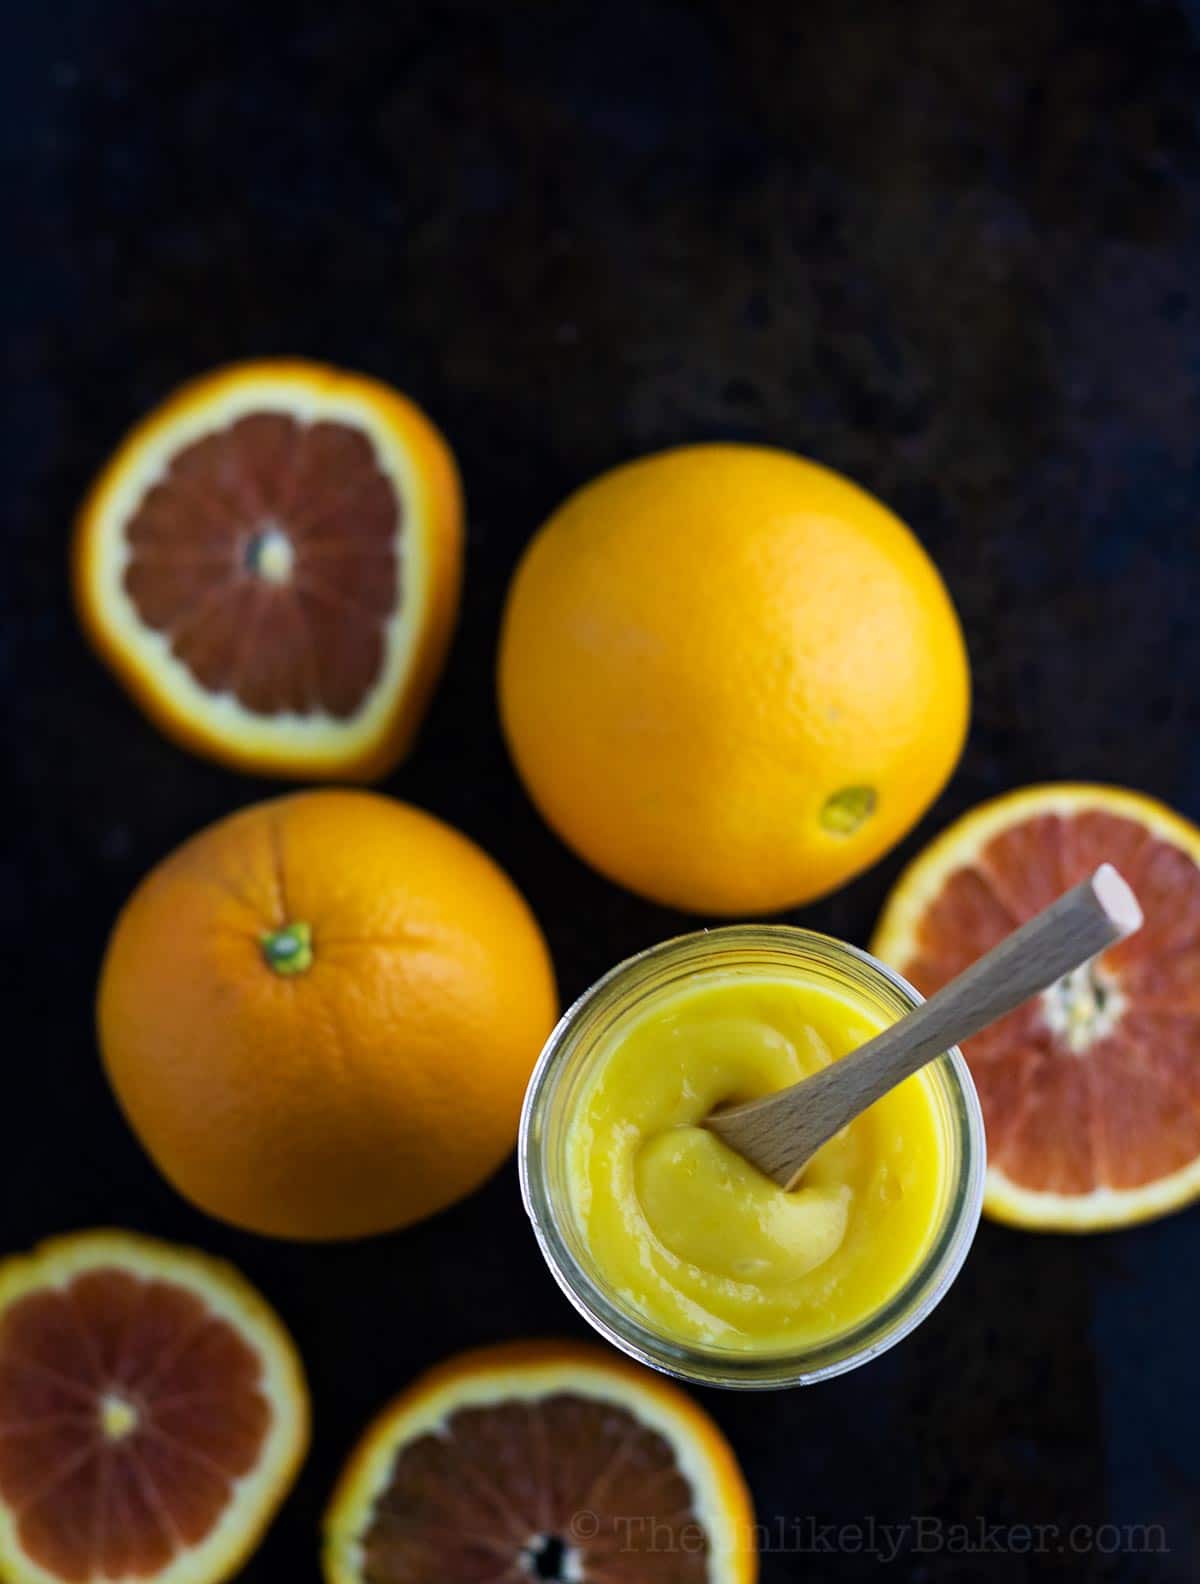 Easy Orange Curd Recipe